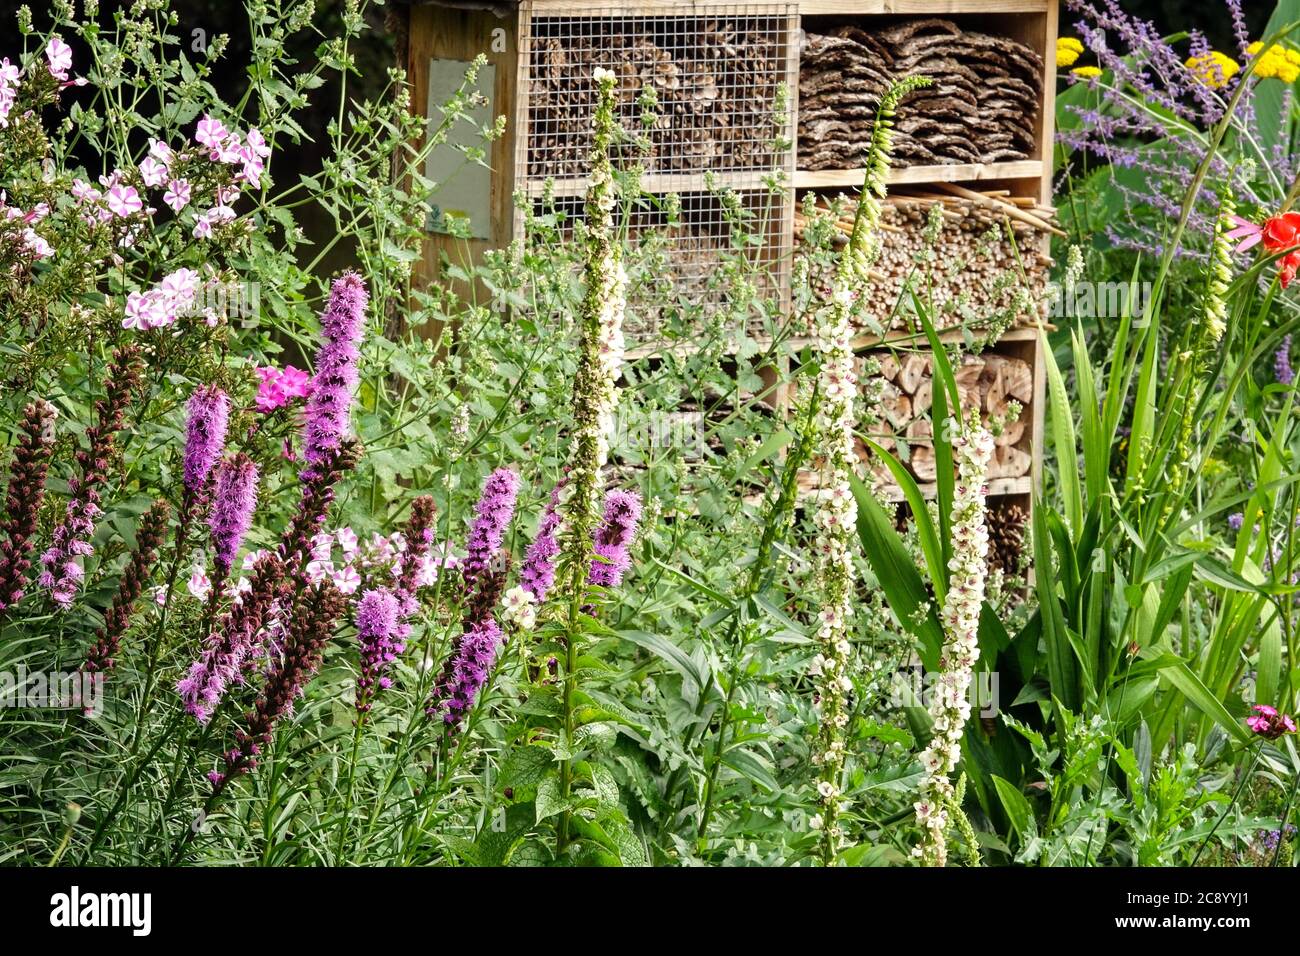 Refugio de insectos jardín sobrecapado hotel de insectos animando la vida silvestre en el jardín Foto de stock